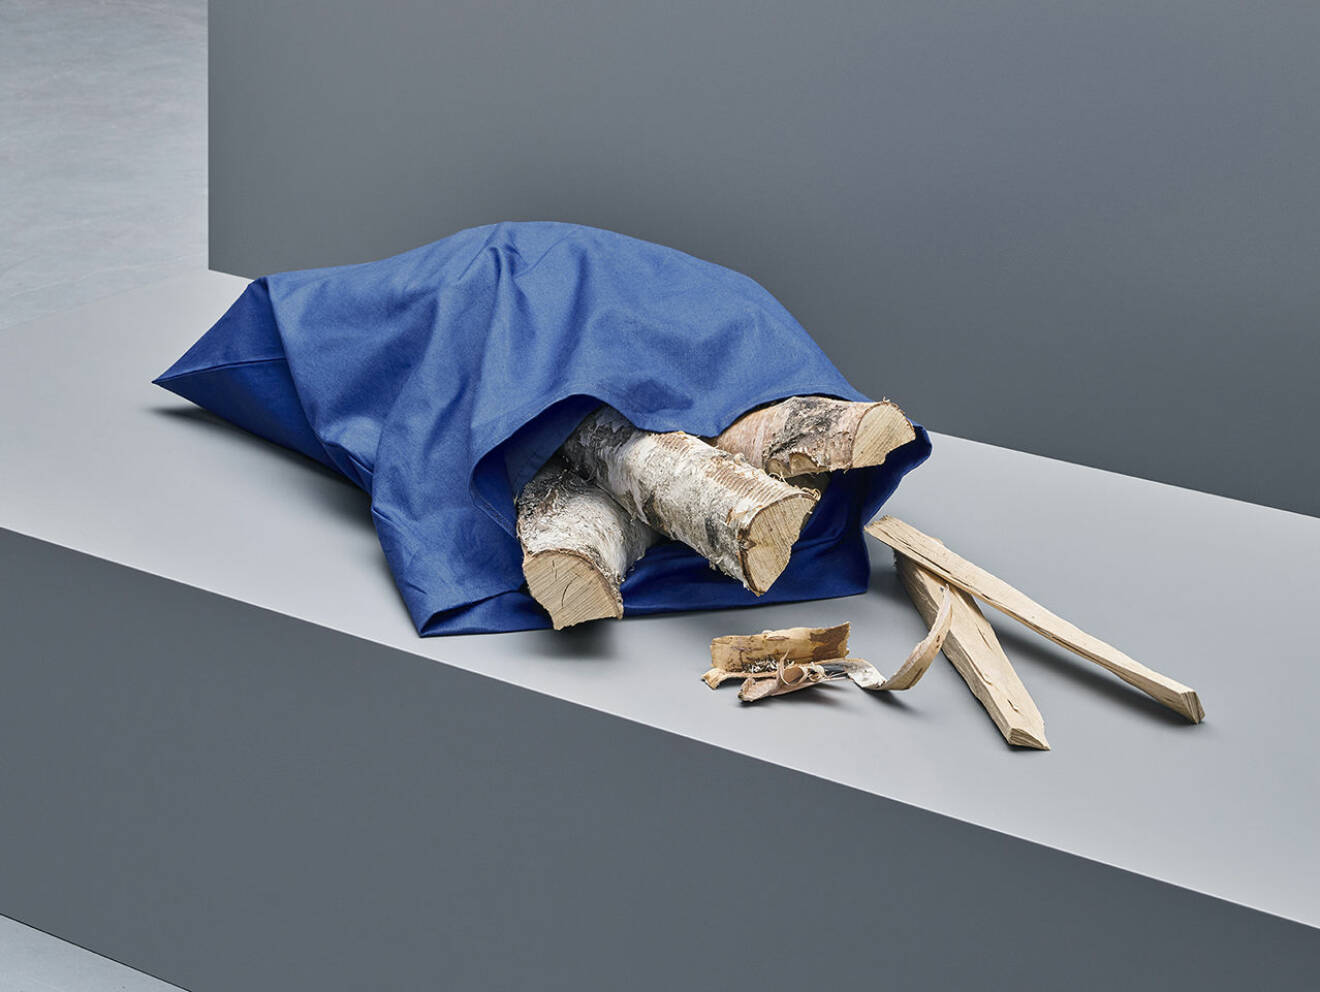 Trä till textil – Tree to textile är ett samarbete mellan Ikea, H&M och innovatören Lars Stigsson